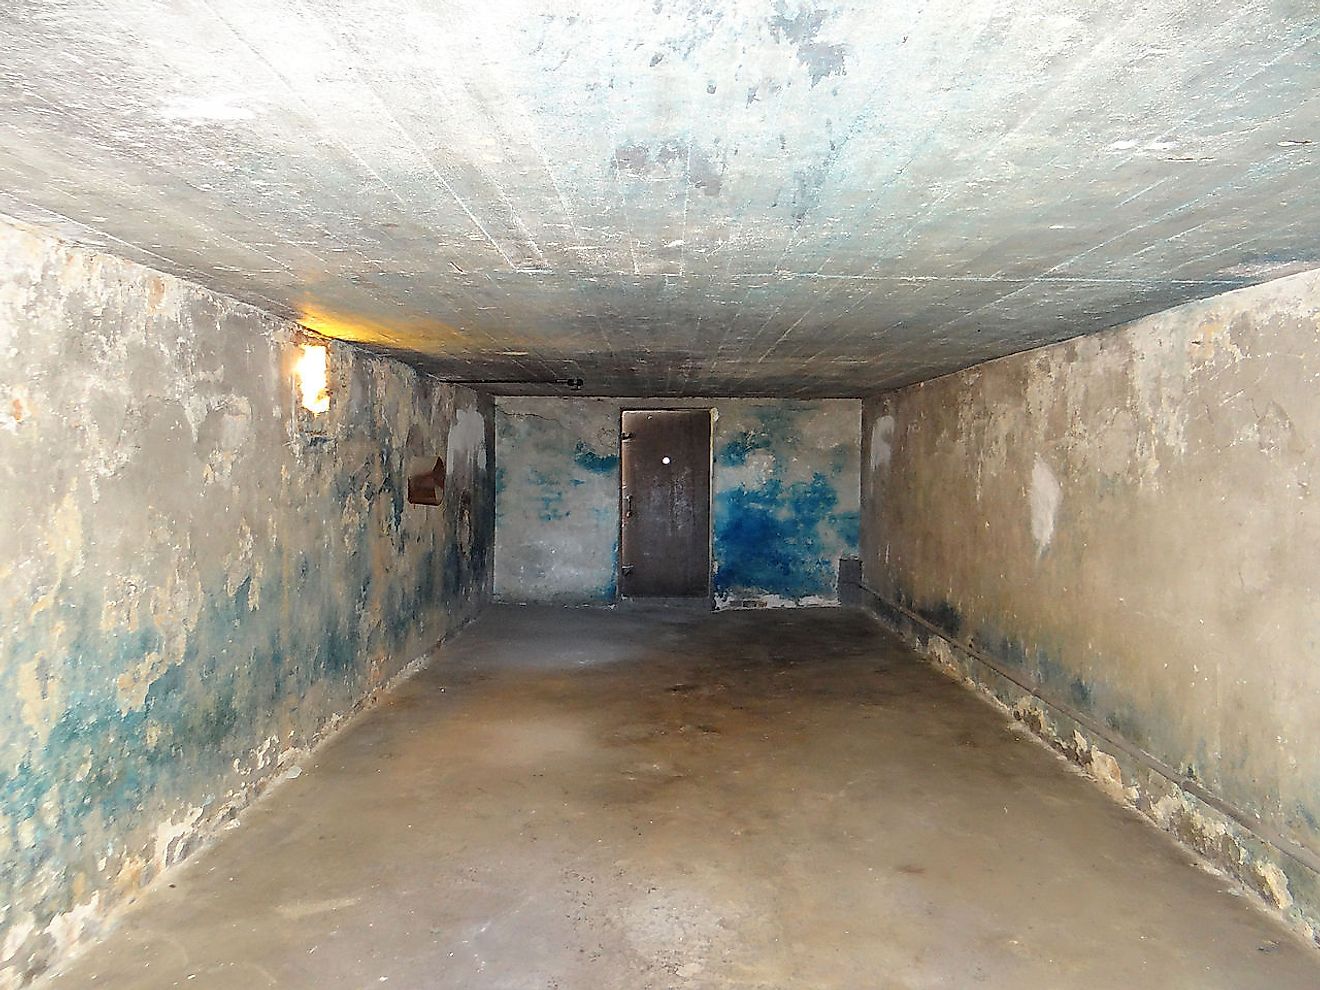 Gas chamber at Majdanek concentration camp in Poland. Image credit: Jolanta Dyr/Wikimedia.org